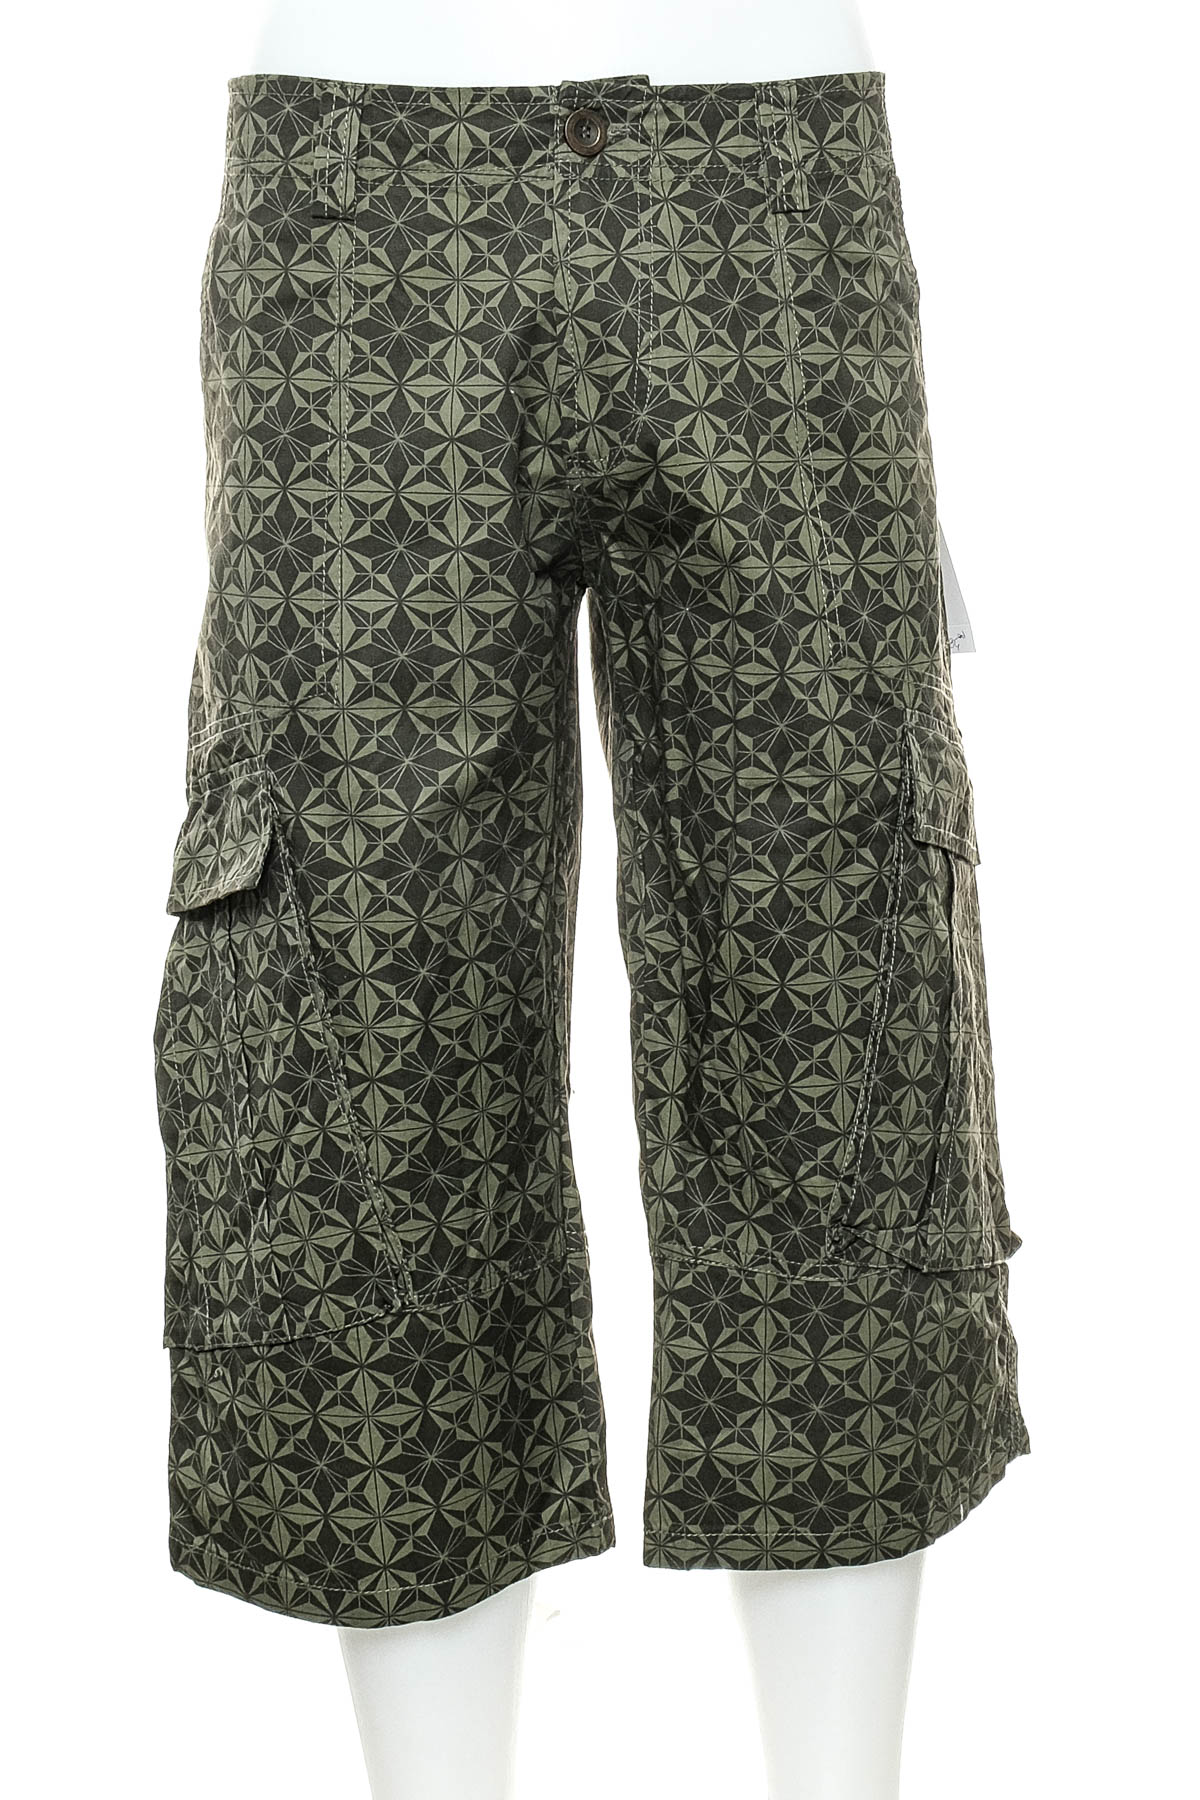 Pantalon pentru bărbați - Apex - 0